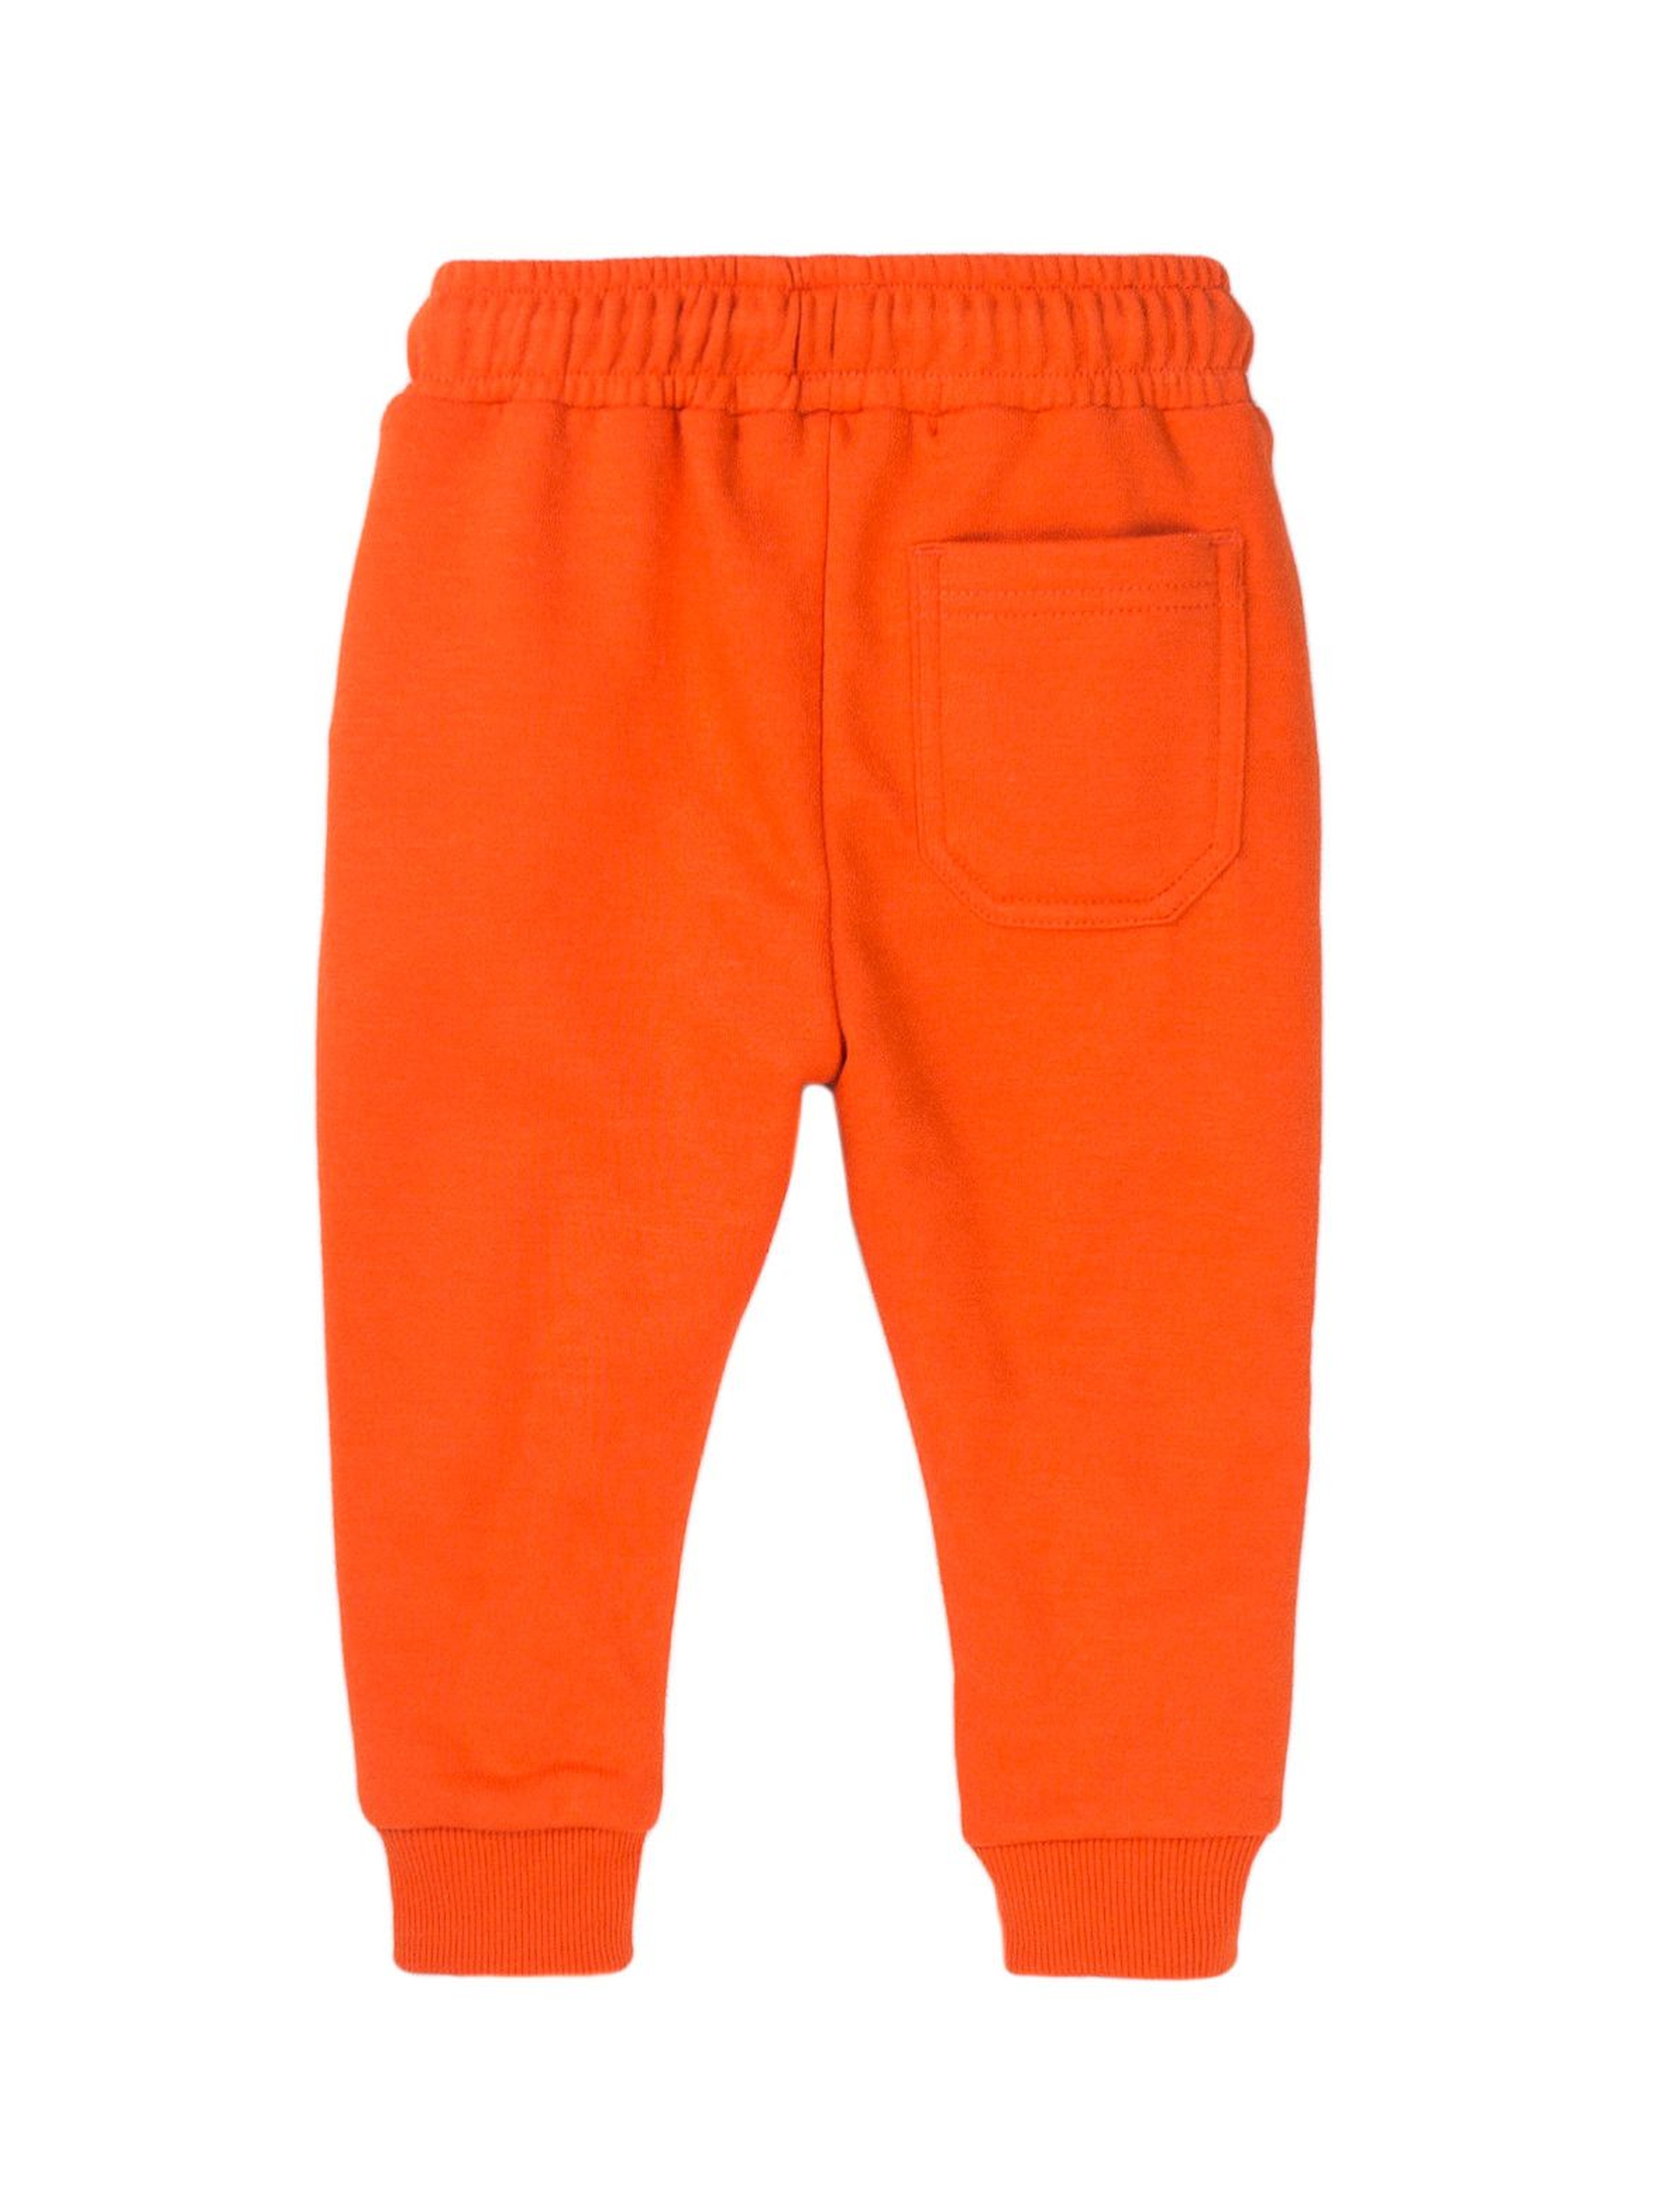 Spodnie dresowe chłopięce pomarańczowe